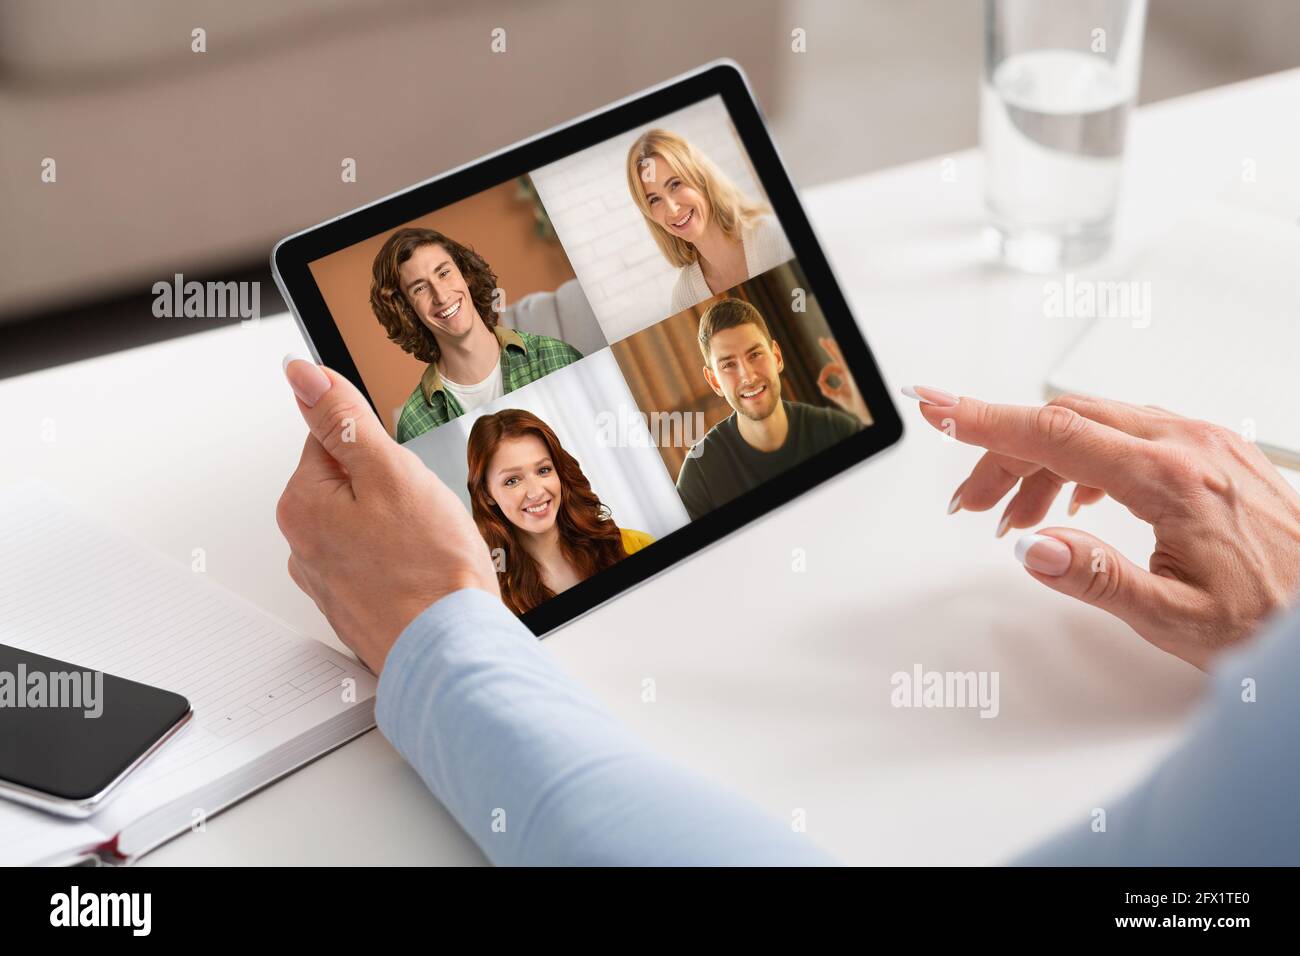 Comunicazione visiva a distanza, tecnologia moderna per video meeting Foto Stock